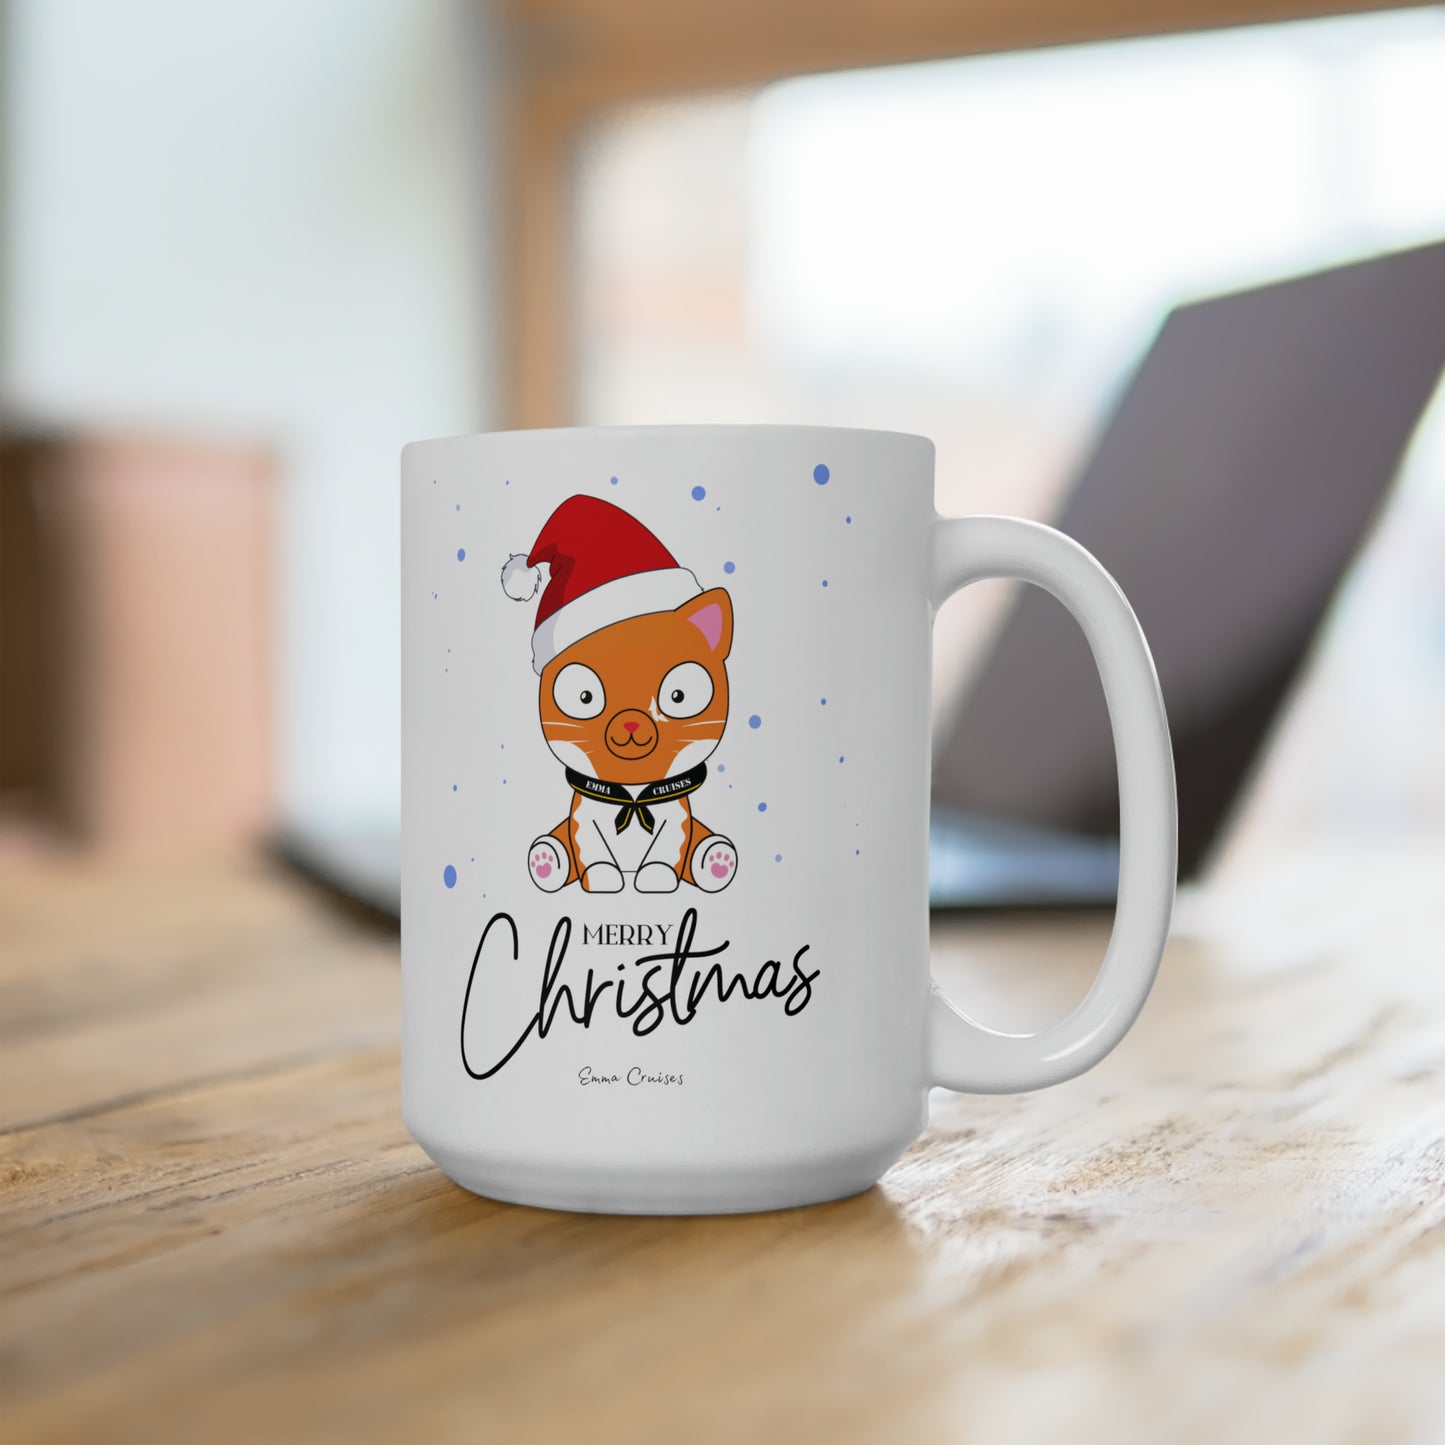 Merry Christmas - Ceramic Mug